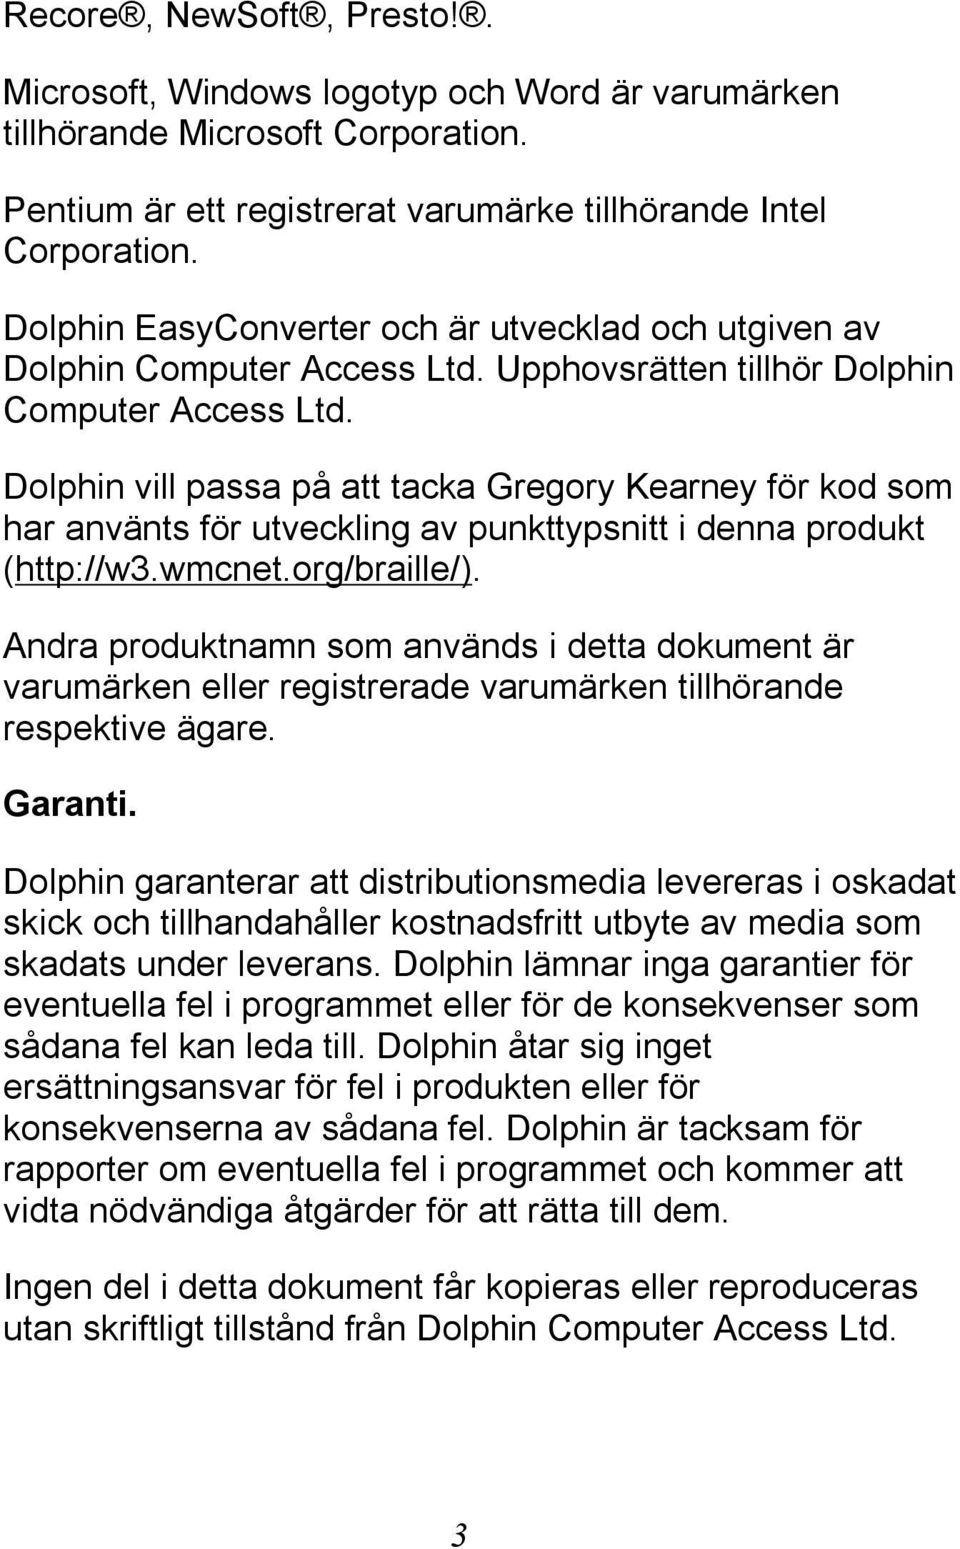 Dolphin vill passa på att tacka Gregory Kearney för kod som har använts för utveckling av punkttypsnitt i denna produkt (http://w3.wmcnet.org/braille/).